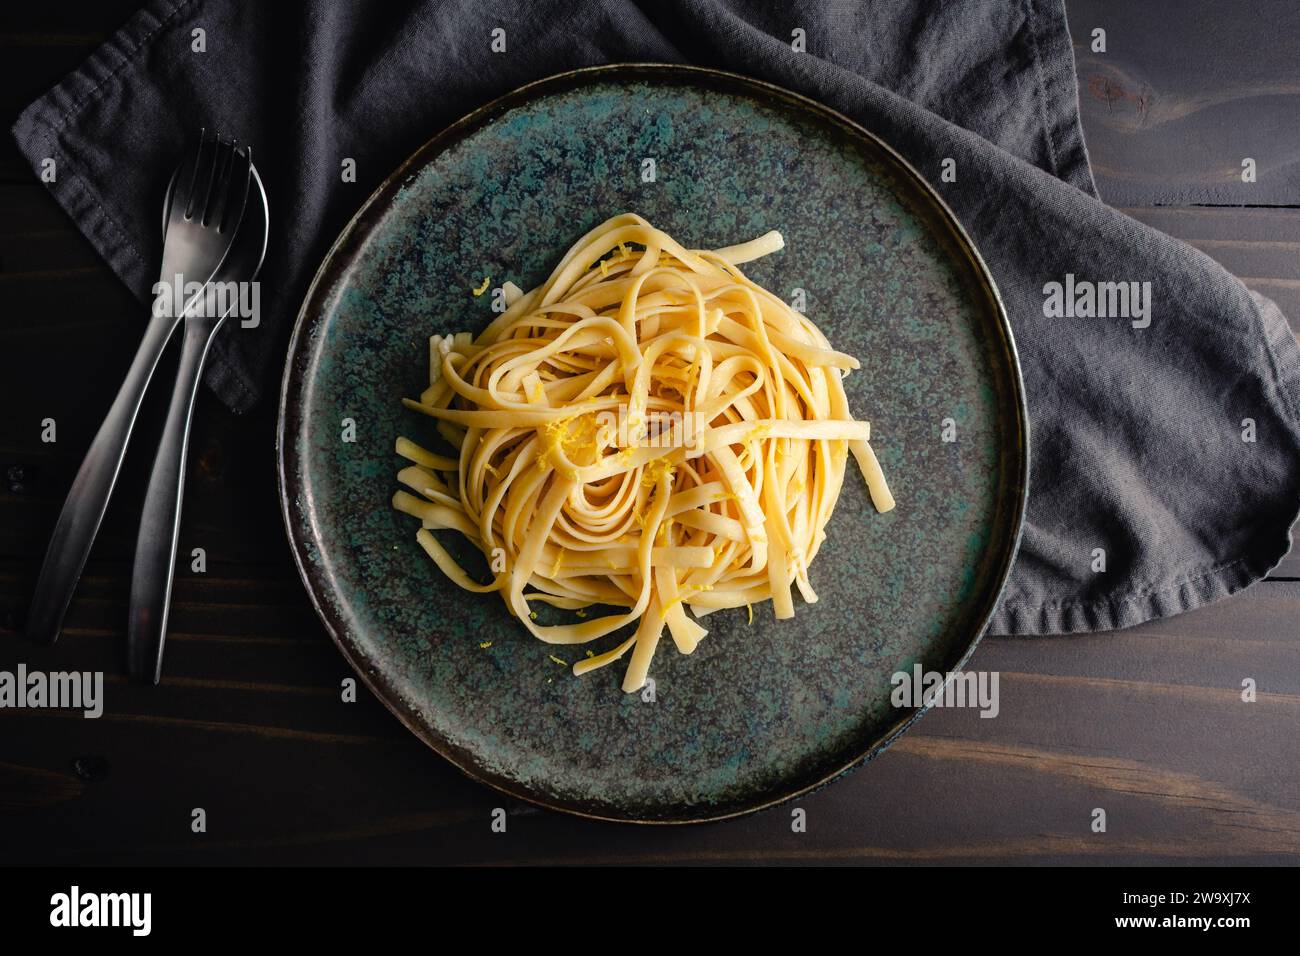 Fettuccine con salsa al limone-mascarpone e scorza di limone: Un piatto di spaghetti larghi serviti guarniti con scorza di limone appena grattugiata Foto Stock